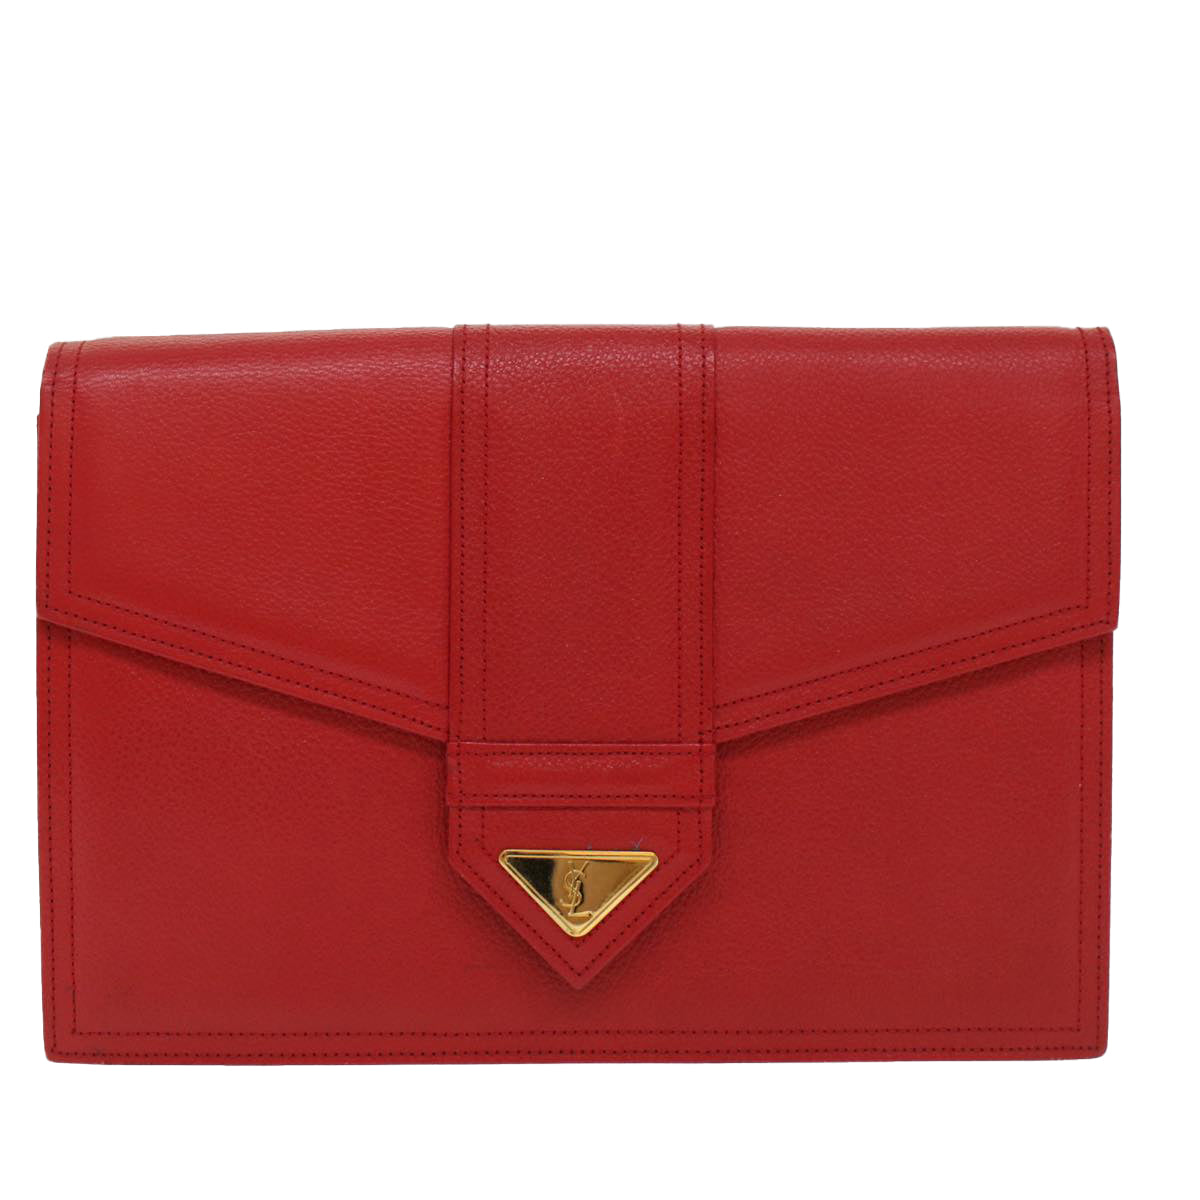 SAINT LAURENT Clutch Bag Leather Red Auth am4931 - 0